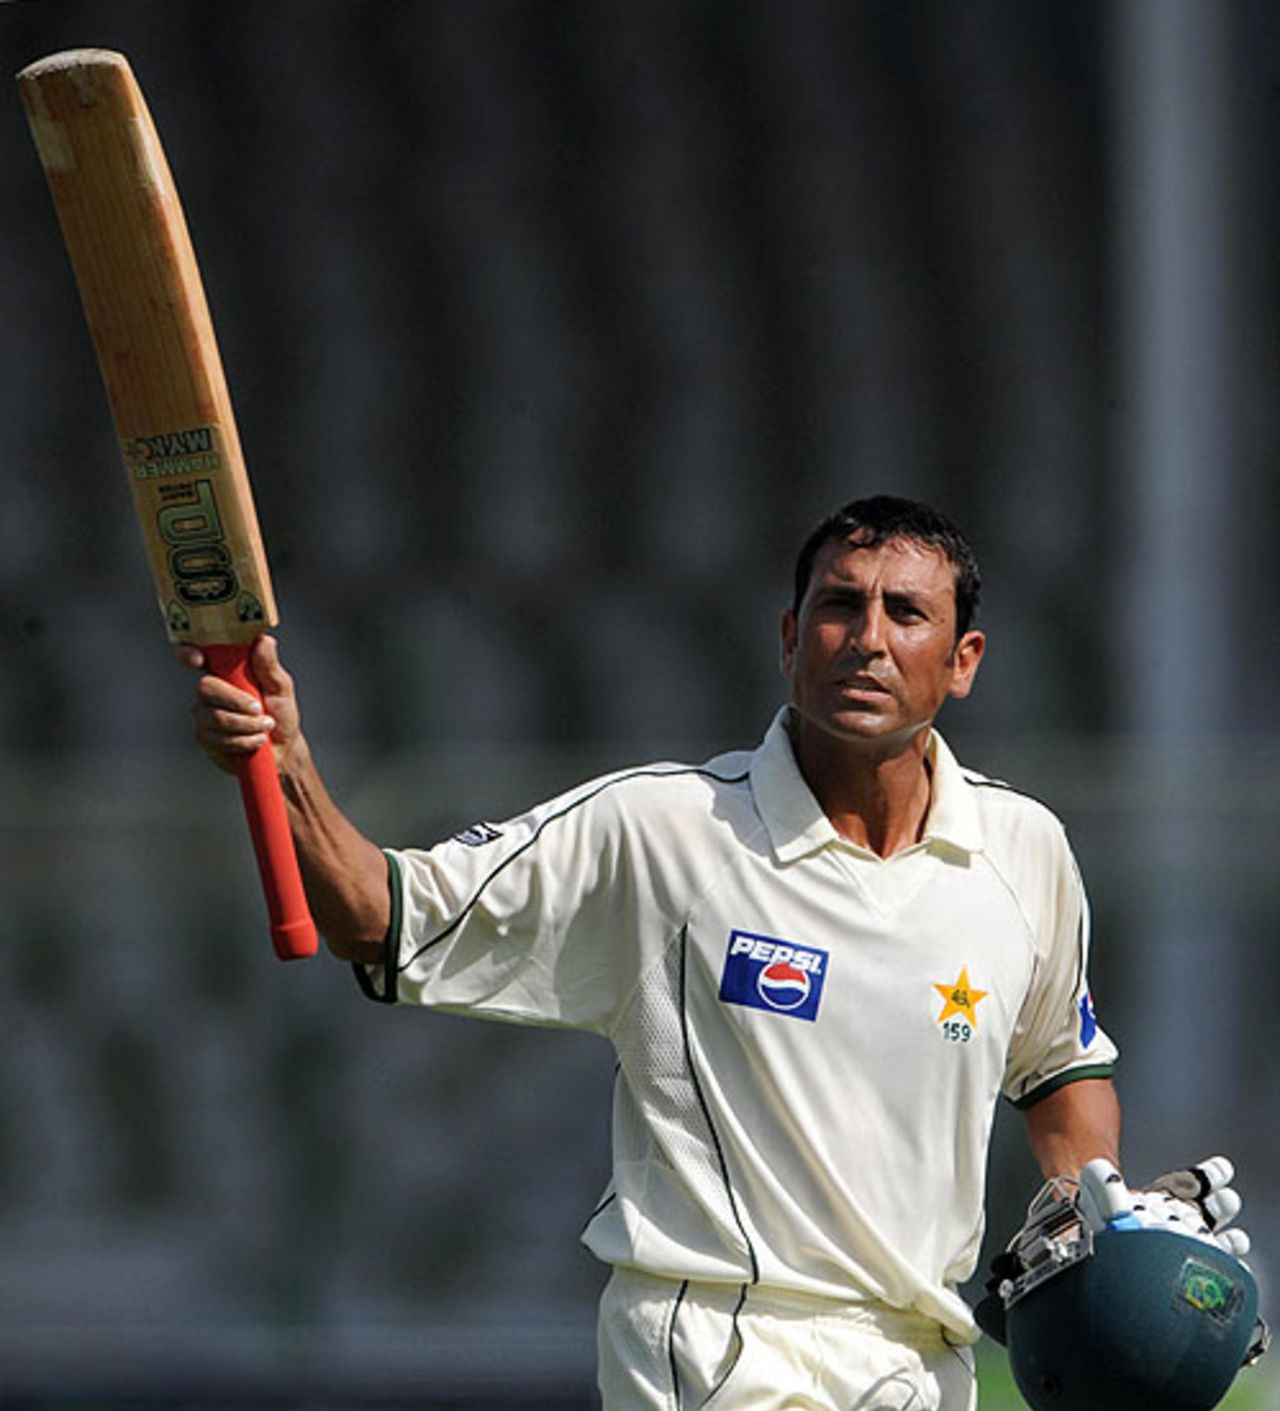 Younis Khan was dismissed for 313, Pakistan v Sri Lanka, 1st Test, Karachi, 5th day, February 25, 2009